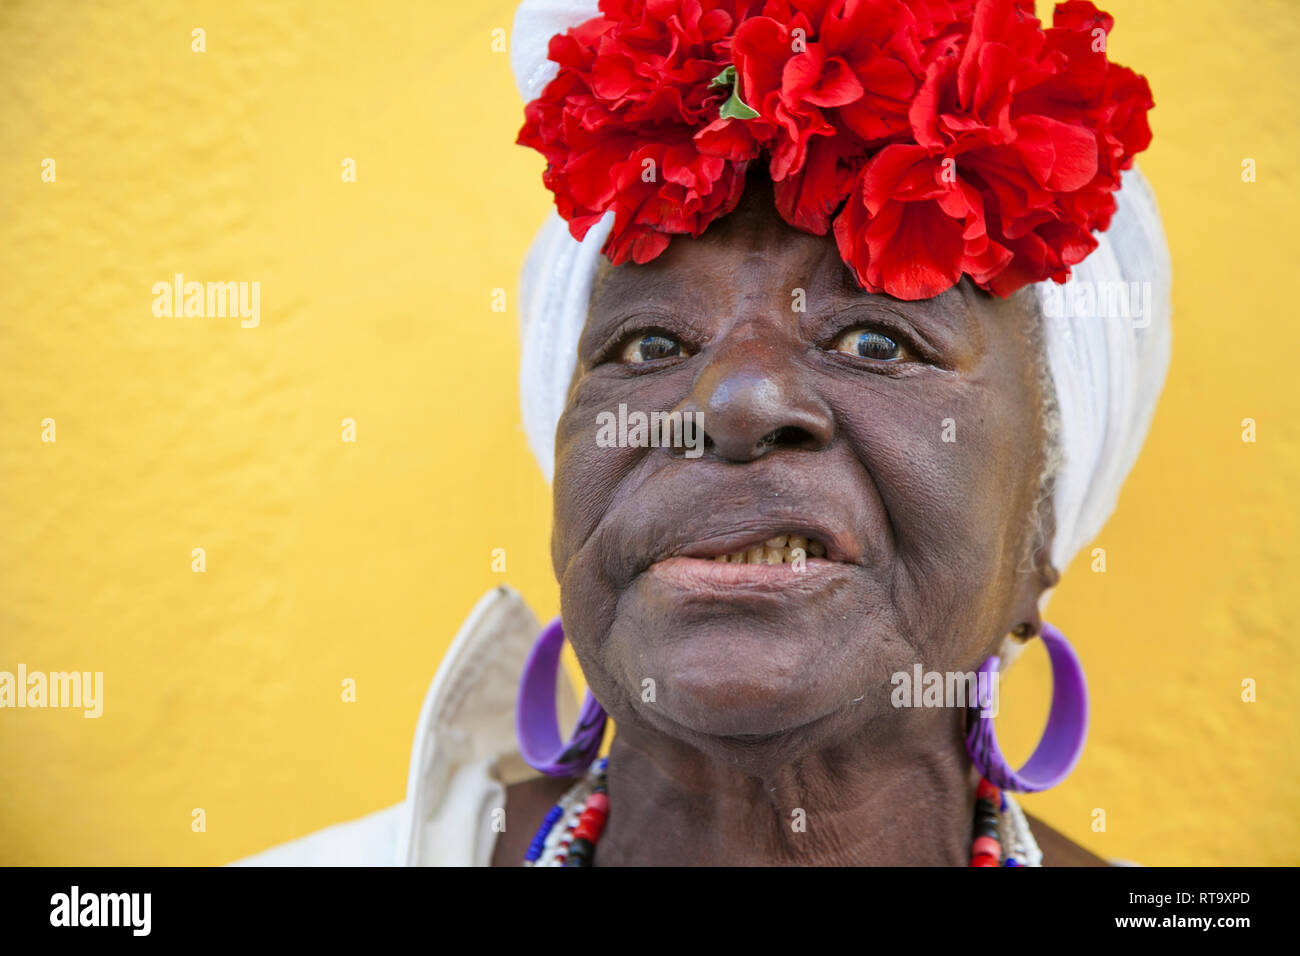 L'Avana, Cuba - 24 Gennaio 2013: Ritratti del popolo cubano in abiti tradizionali. Un anziano afro-cubano donna con un fiorito velo. Foto Stock